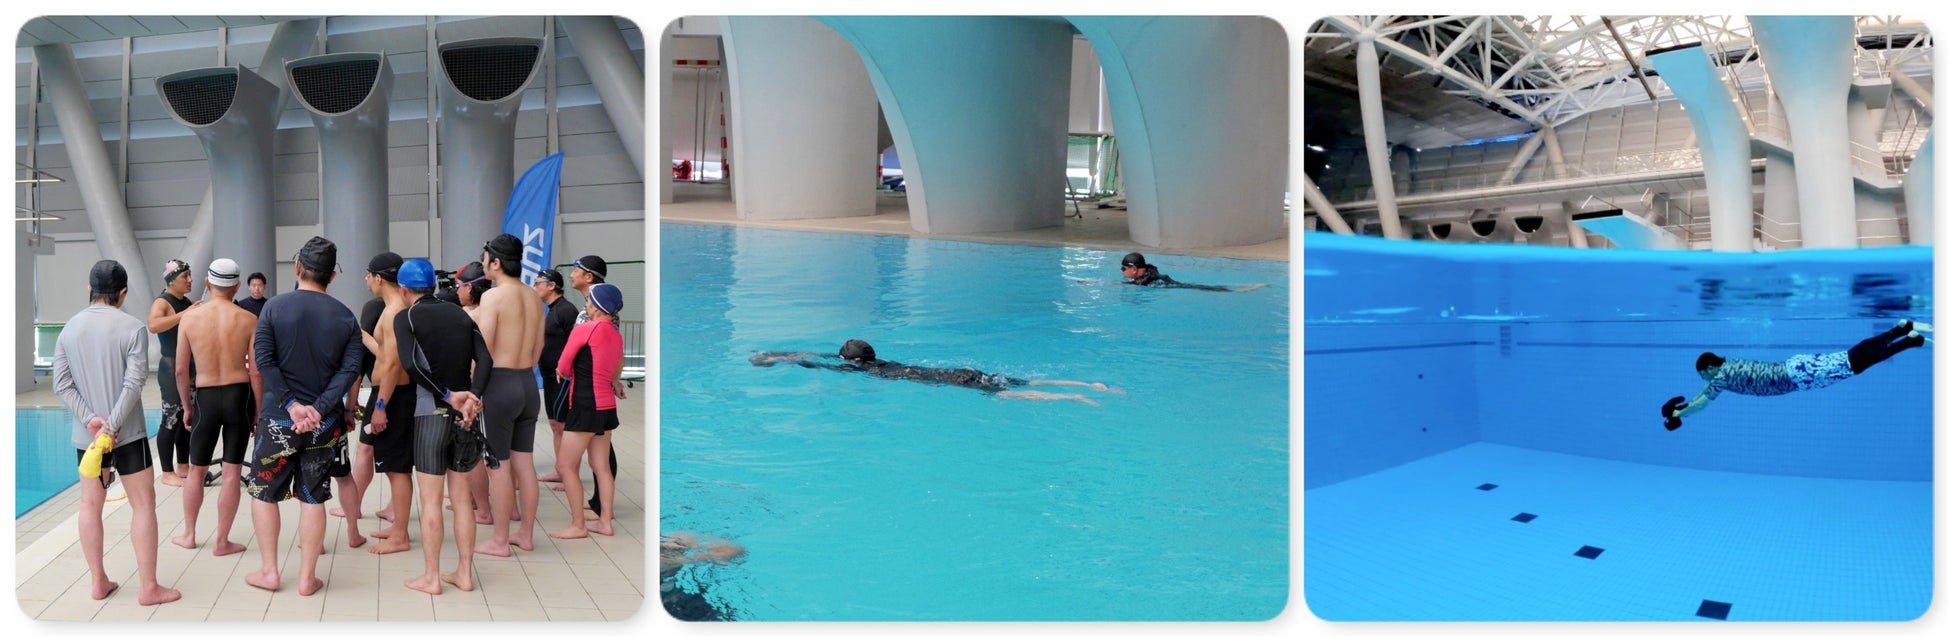 簡単操作で自由に泳げる水中スクーターで新しいアクアフィットネスを体感する無料体験会を7月13日（水）に横浜国際プールで開催のサブ画像2_※実際の内容と異なる場合があります。